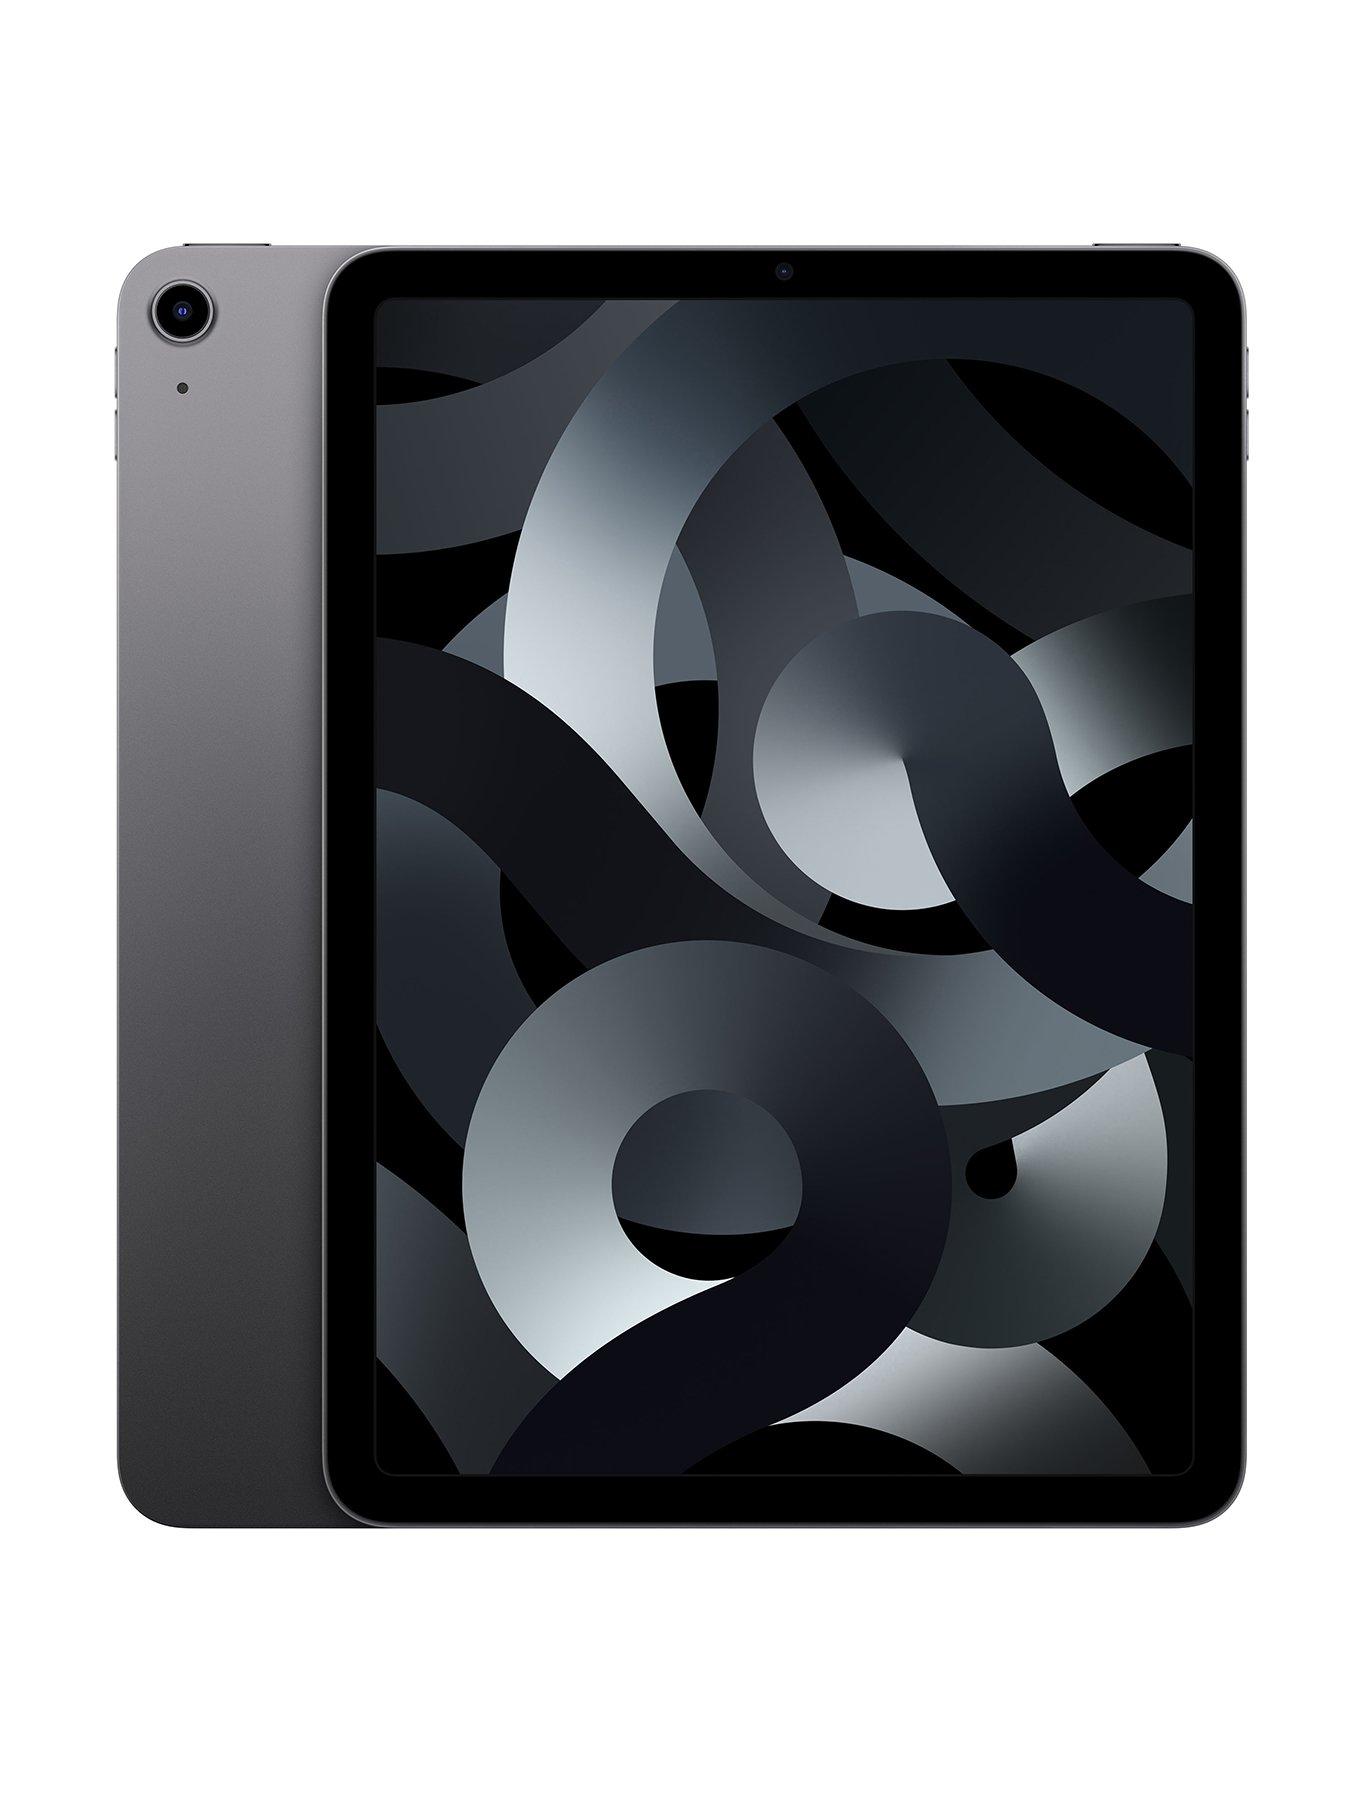 純正新作iPad Air4 10.9インチ 64GBWi-Fiモデル ipadair4 iPad本体